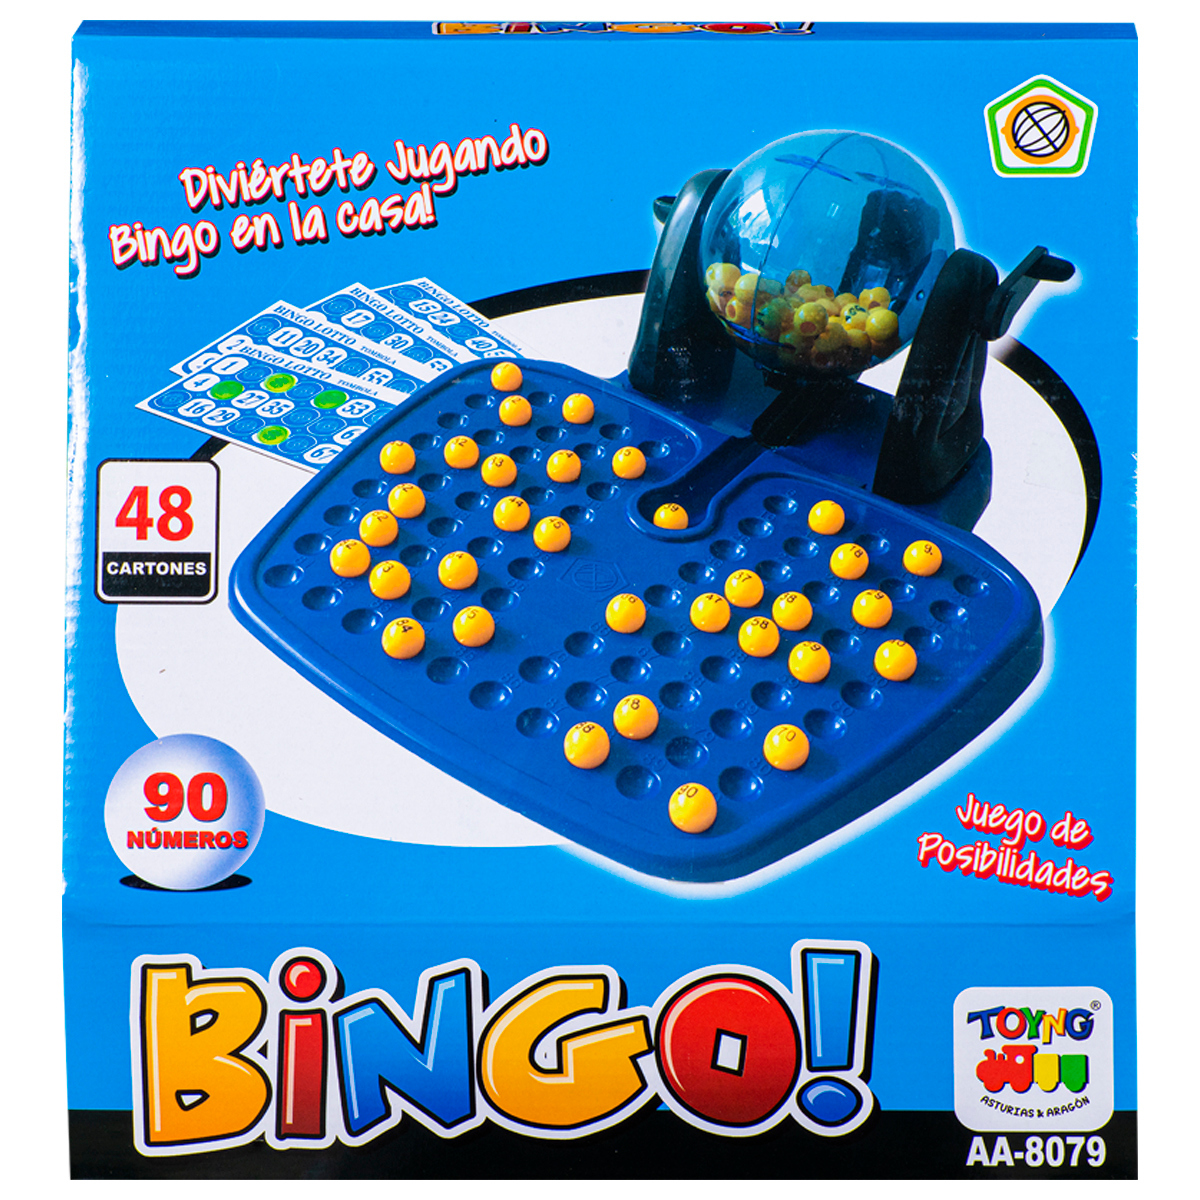 Comprar Tarjetas de juego de Bingo educativo, juego de juguetes de Bingo  con números únicos, juguete de ajedrez de Bingo, fiesta infantil